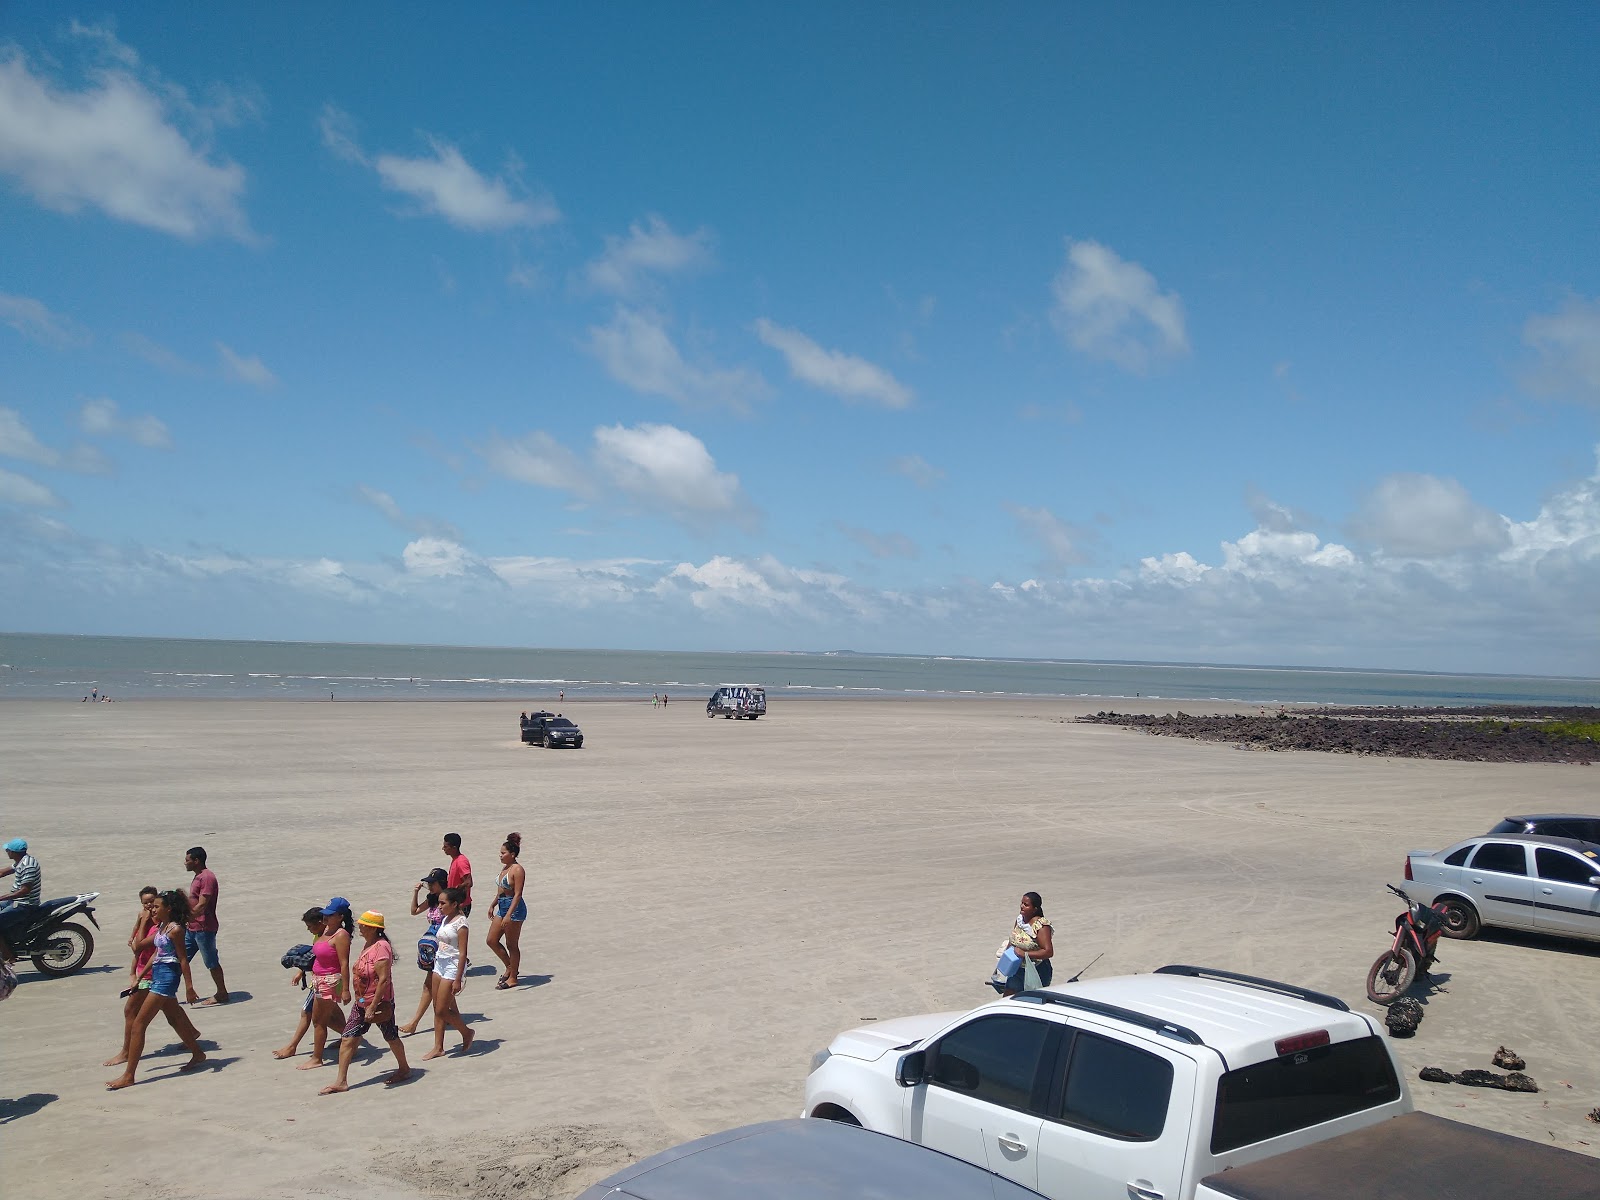 Praia de Araoca'in fotoğrafı geniş plaj ile birlikte